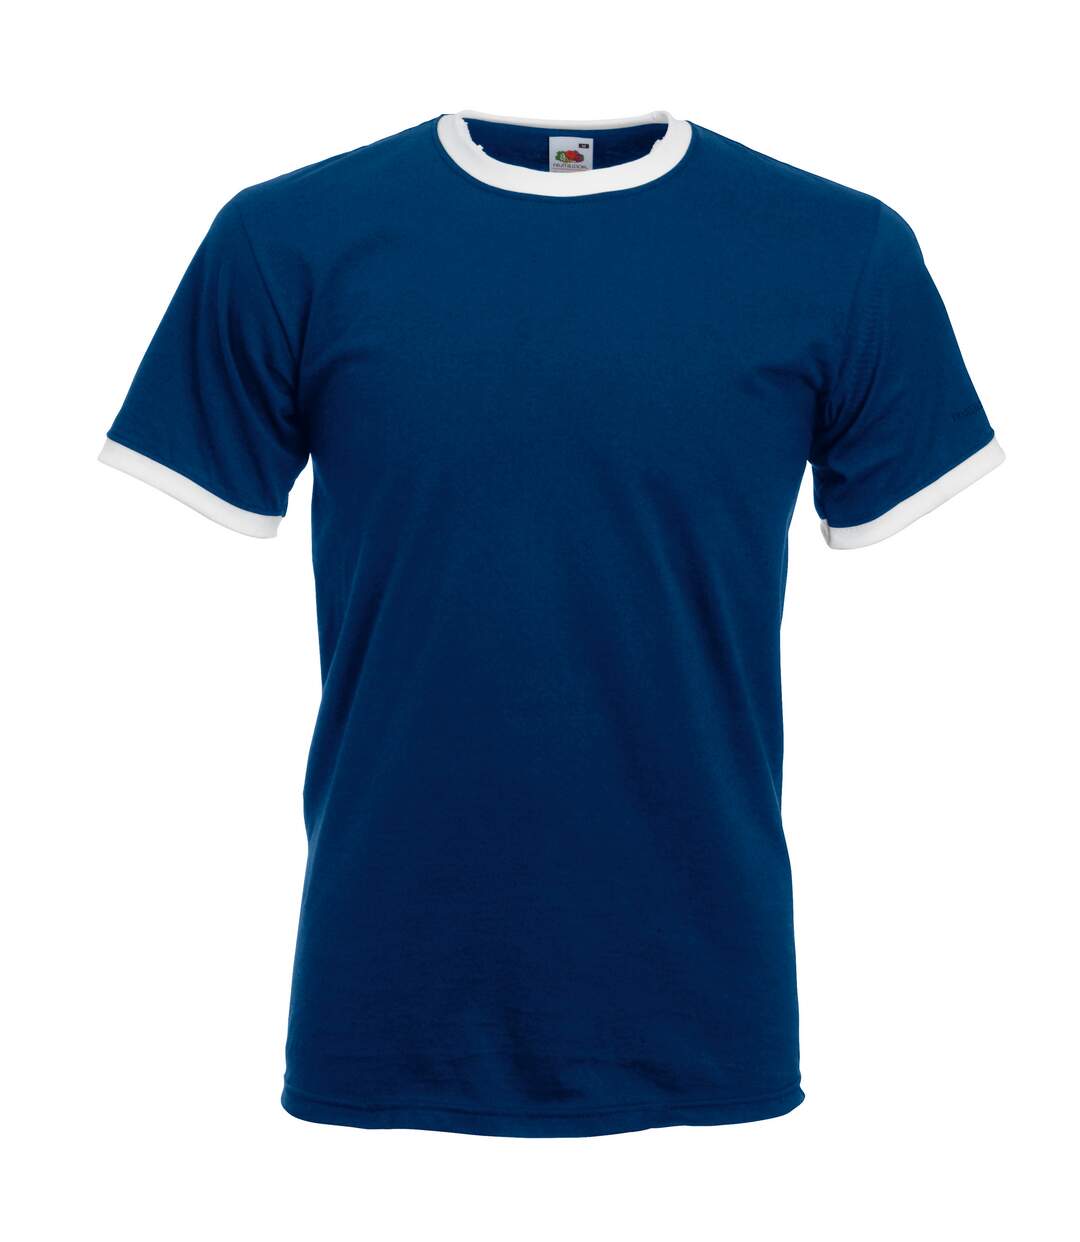 Fruit Of The Loom Mens Ringer Short Sleeve T-Shirt (Navy/White)